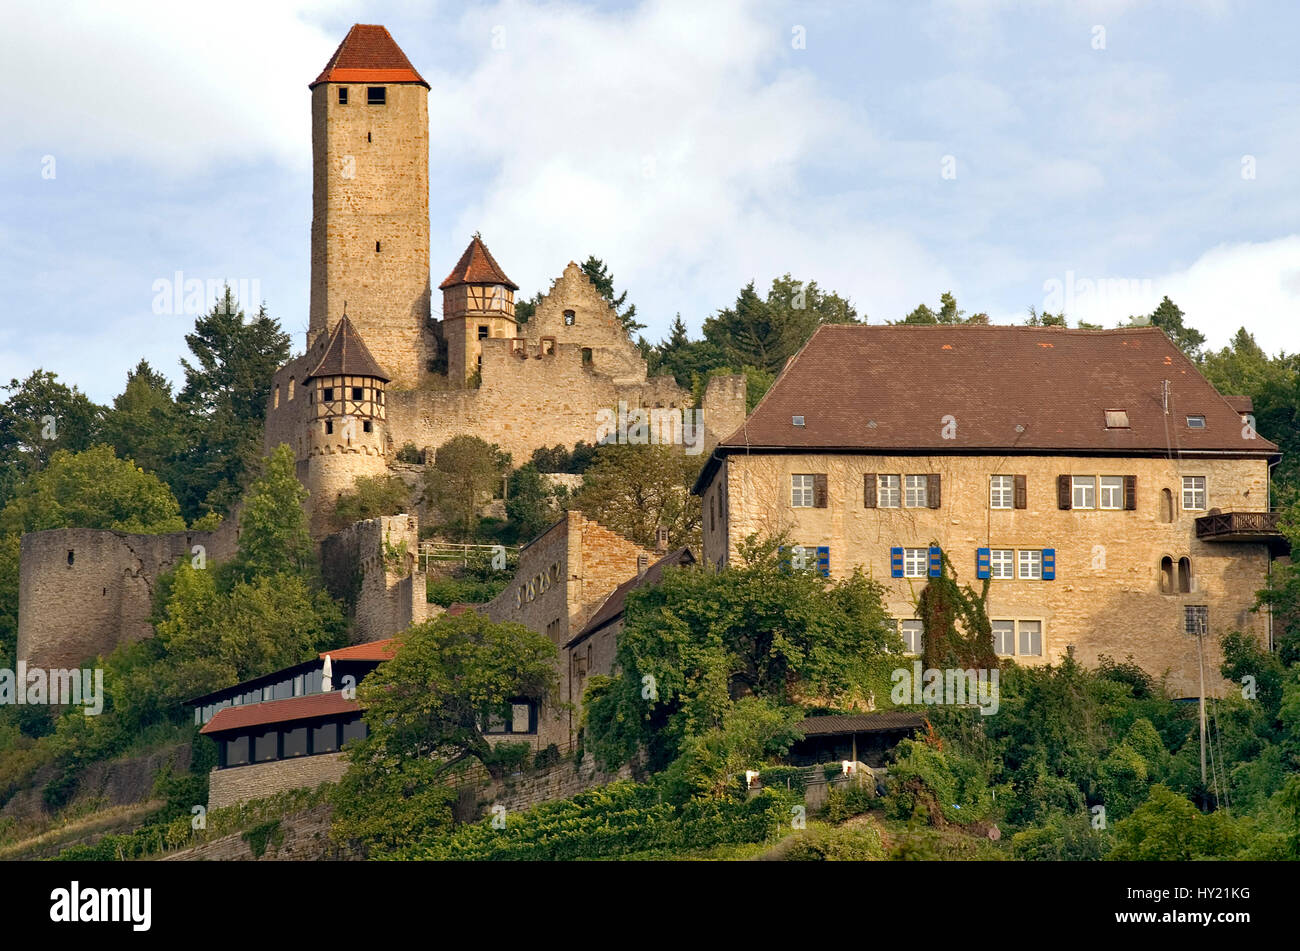 Blick auf die Burg Hornberg, die Burg des GÃ¶tz von Berlichingen, in Neckarzimmern in Baden WÃ¼rttemberg, Deutschland.   Image of the Castle Hornberg  Stock Photo